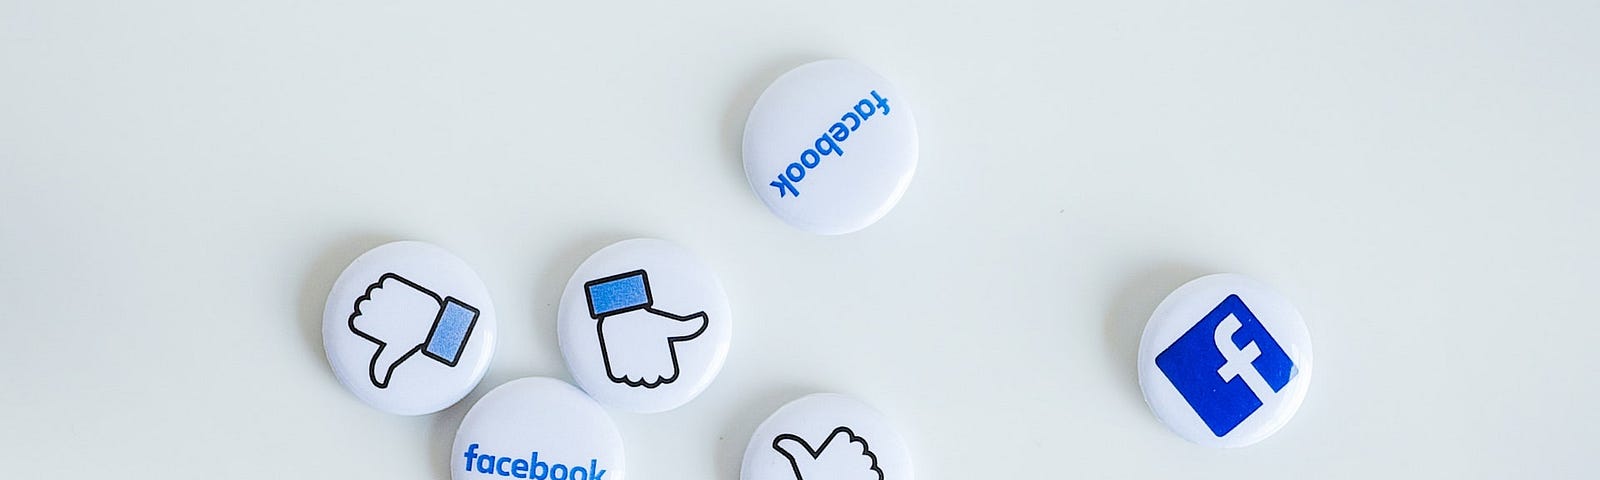 Facebook icon pins